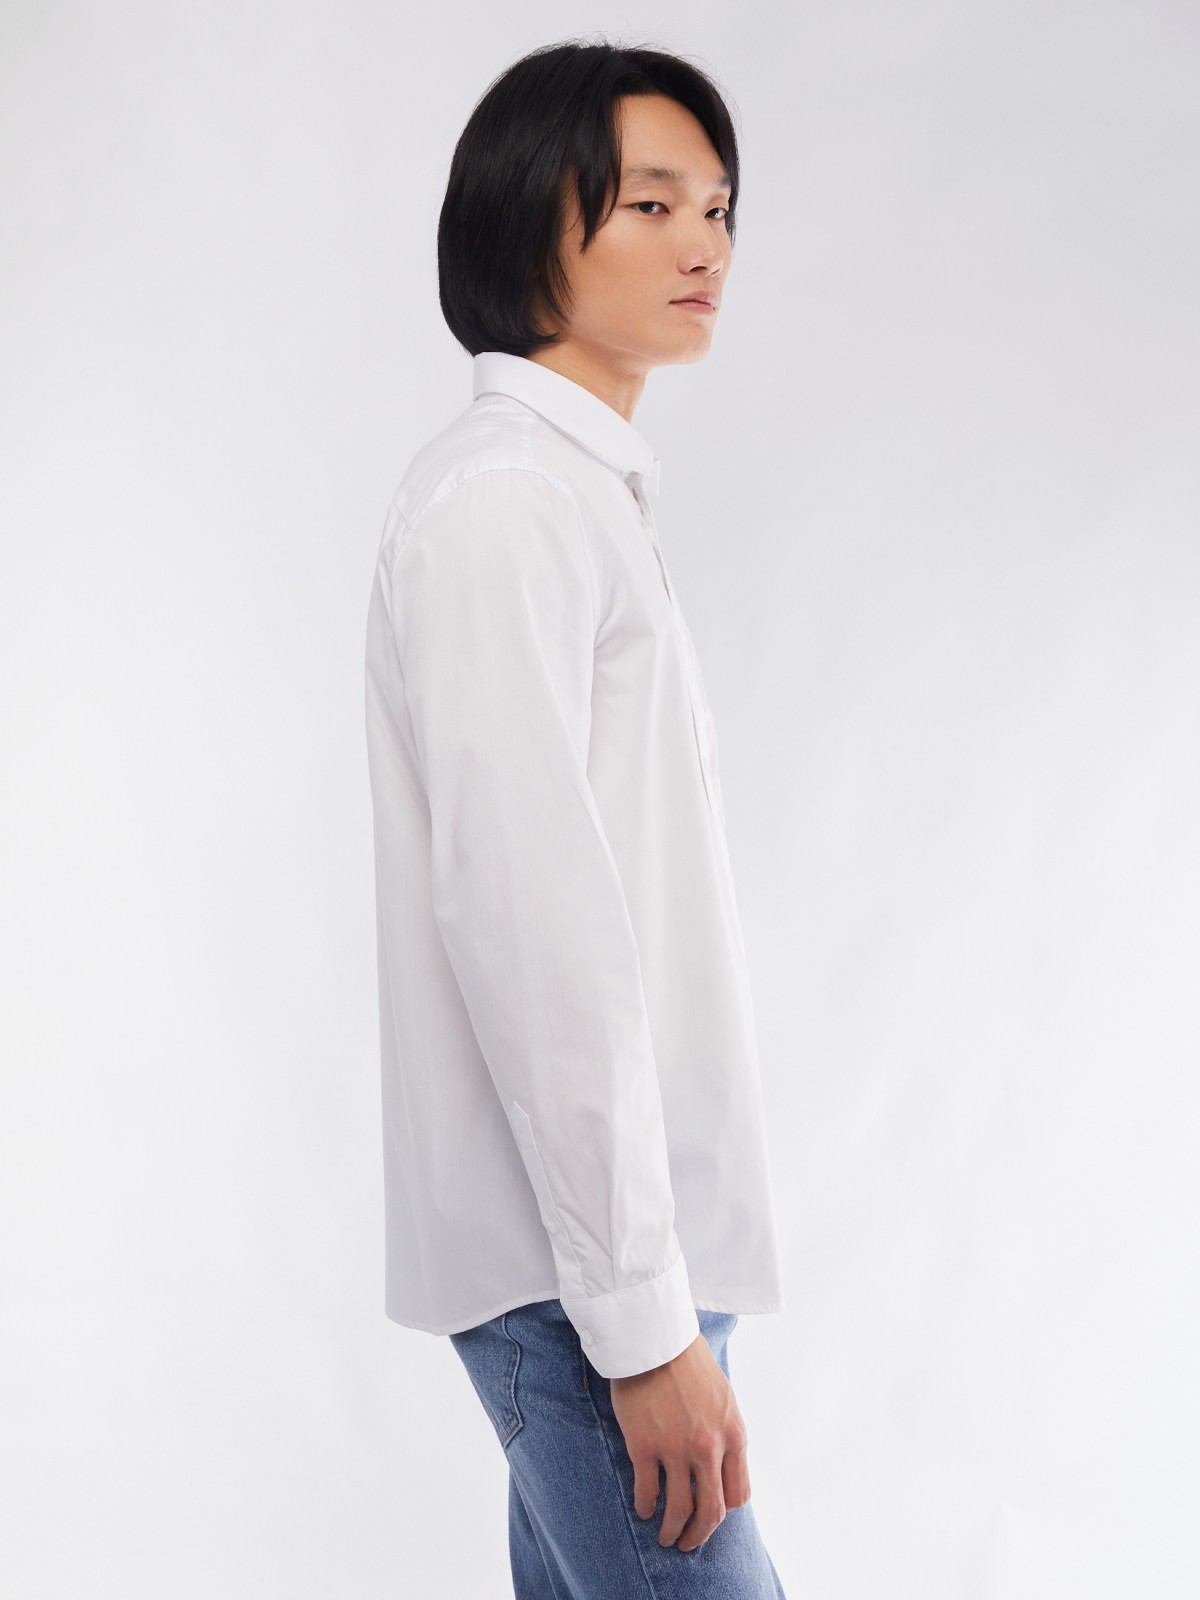 Офисная рубашка прямого силуэта с карманом zolla 014112162112, цвет белый, размер M - фото 5